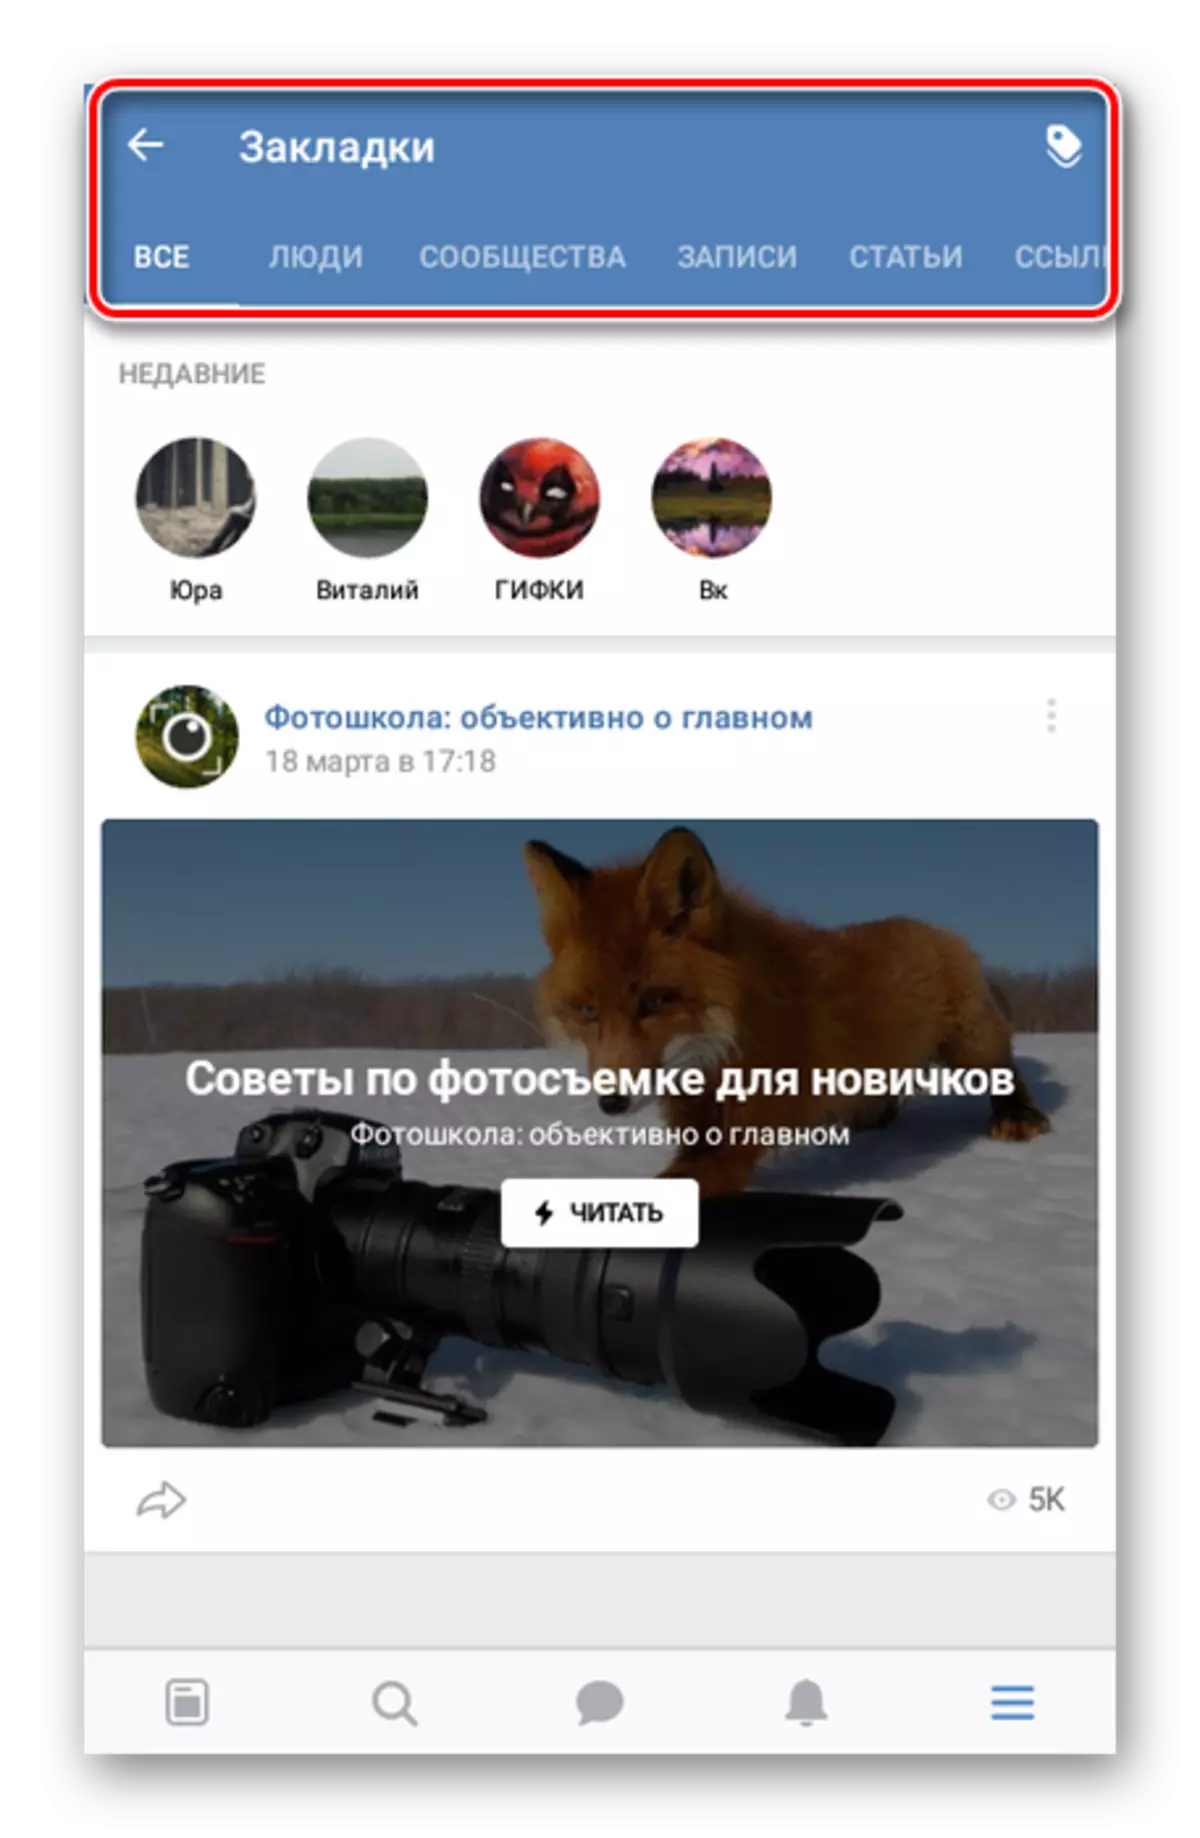 Besjoch blêdwizerslist yn Vkontakte-applikaasje